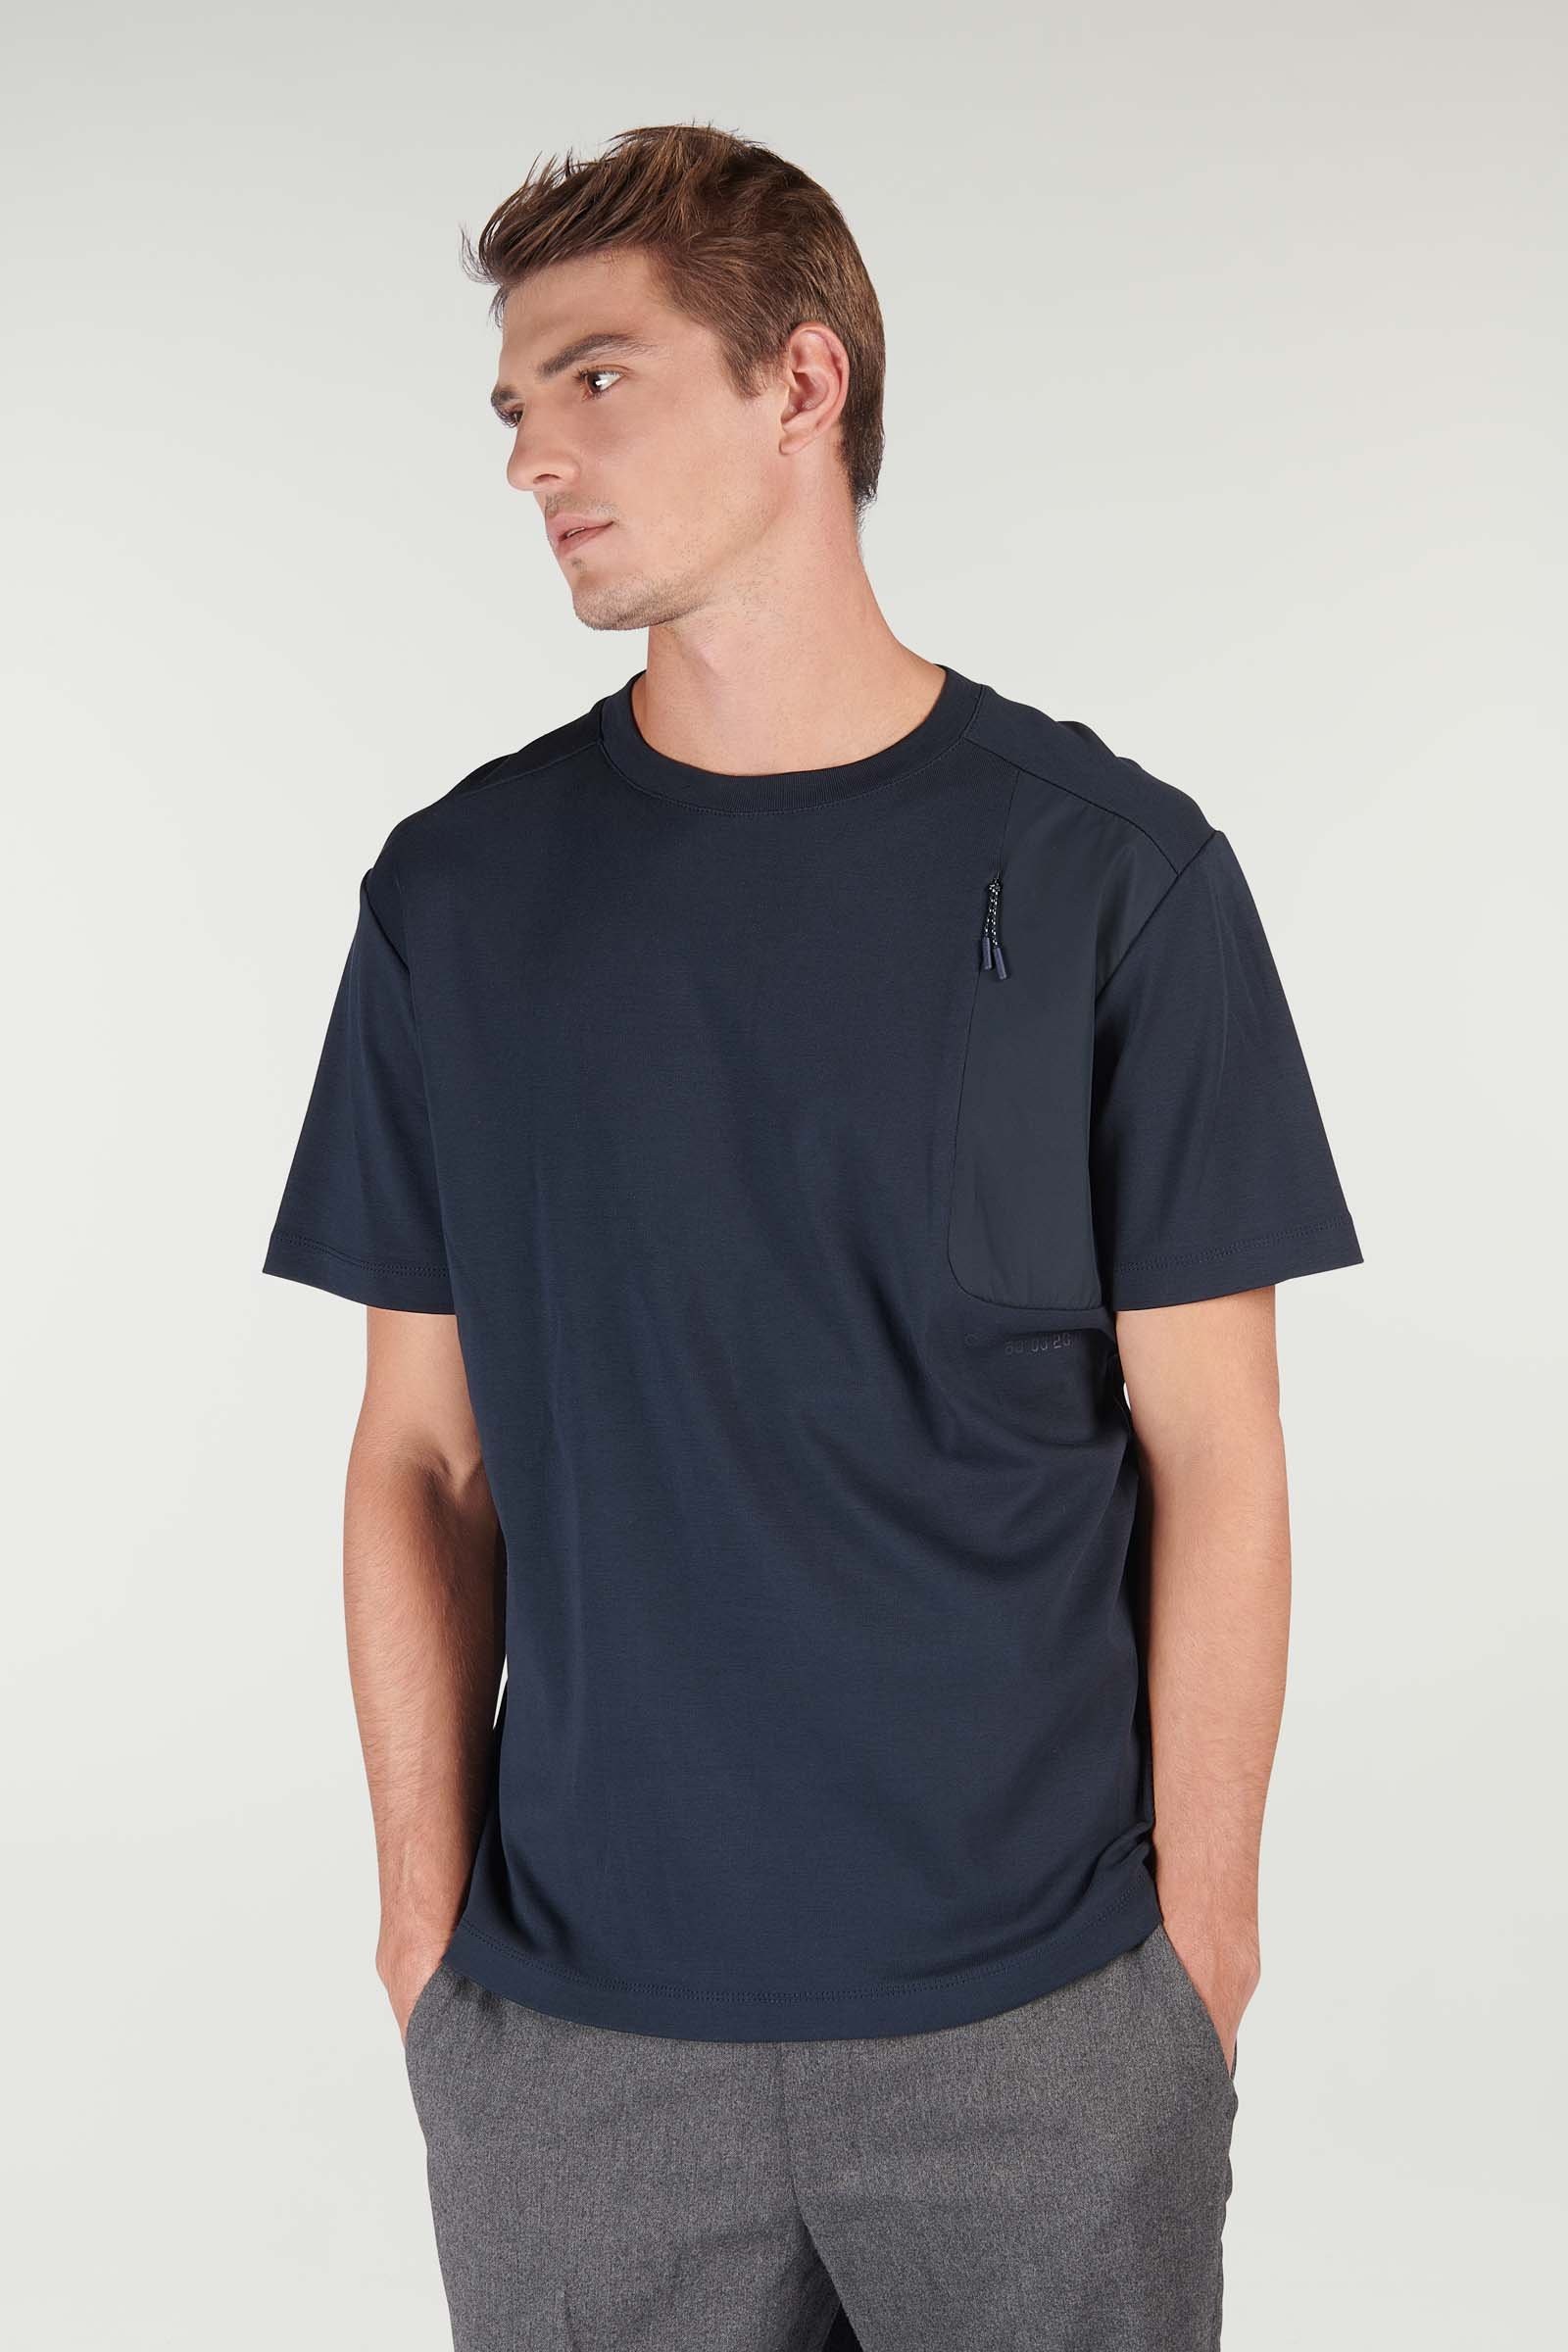 CKS hommes - SESAME - t-shirt à manches courtes - bleu foncé